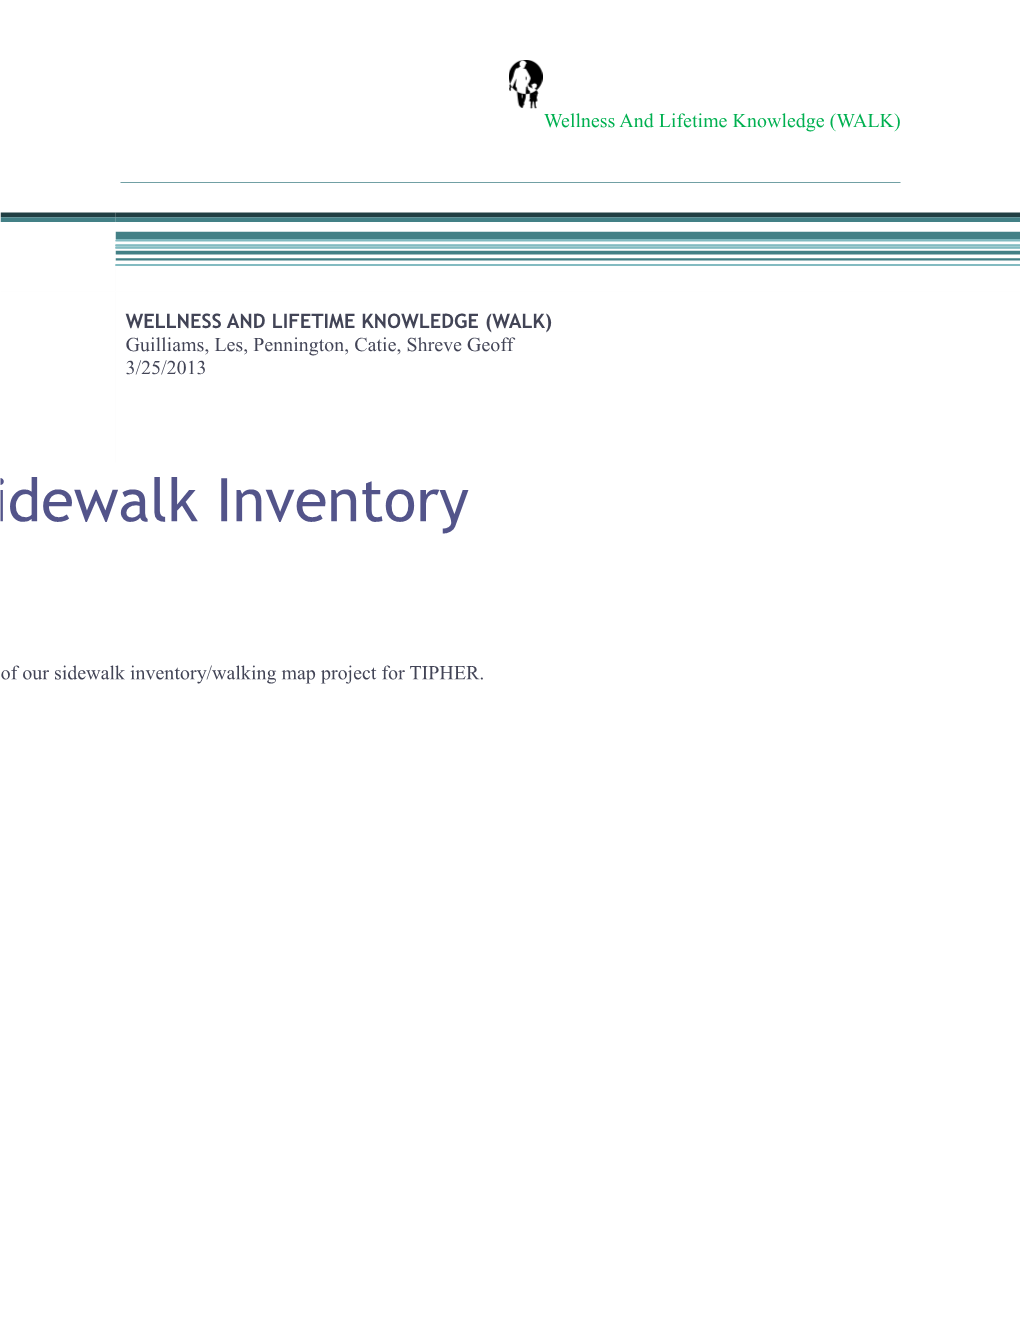 TIPHER: Sidewalk Inventory